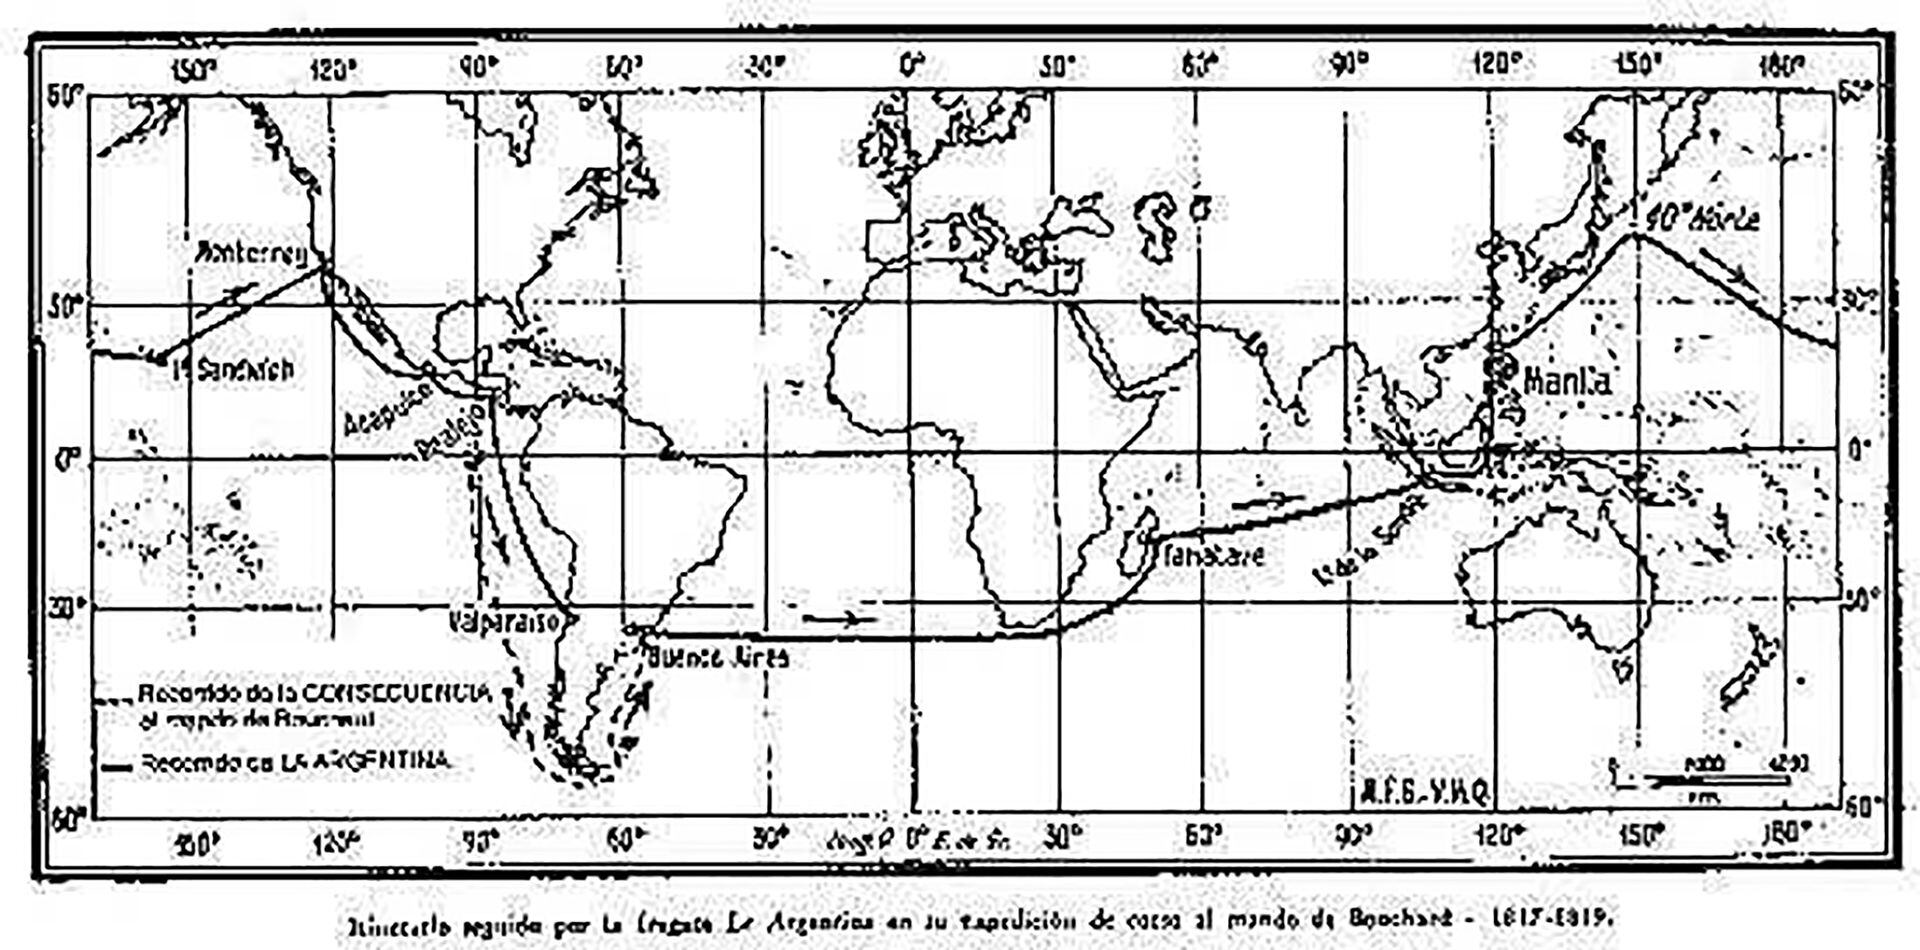 El largo periplo de Bouchard como corsario alrededor del mundo. 